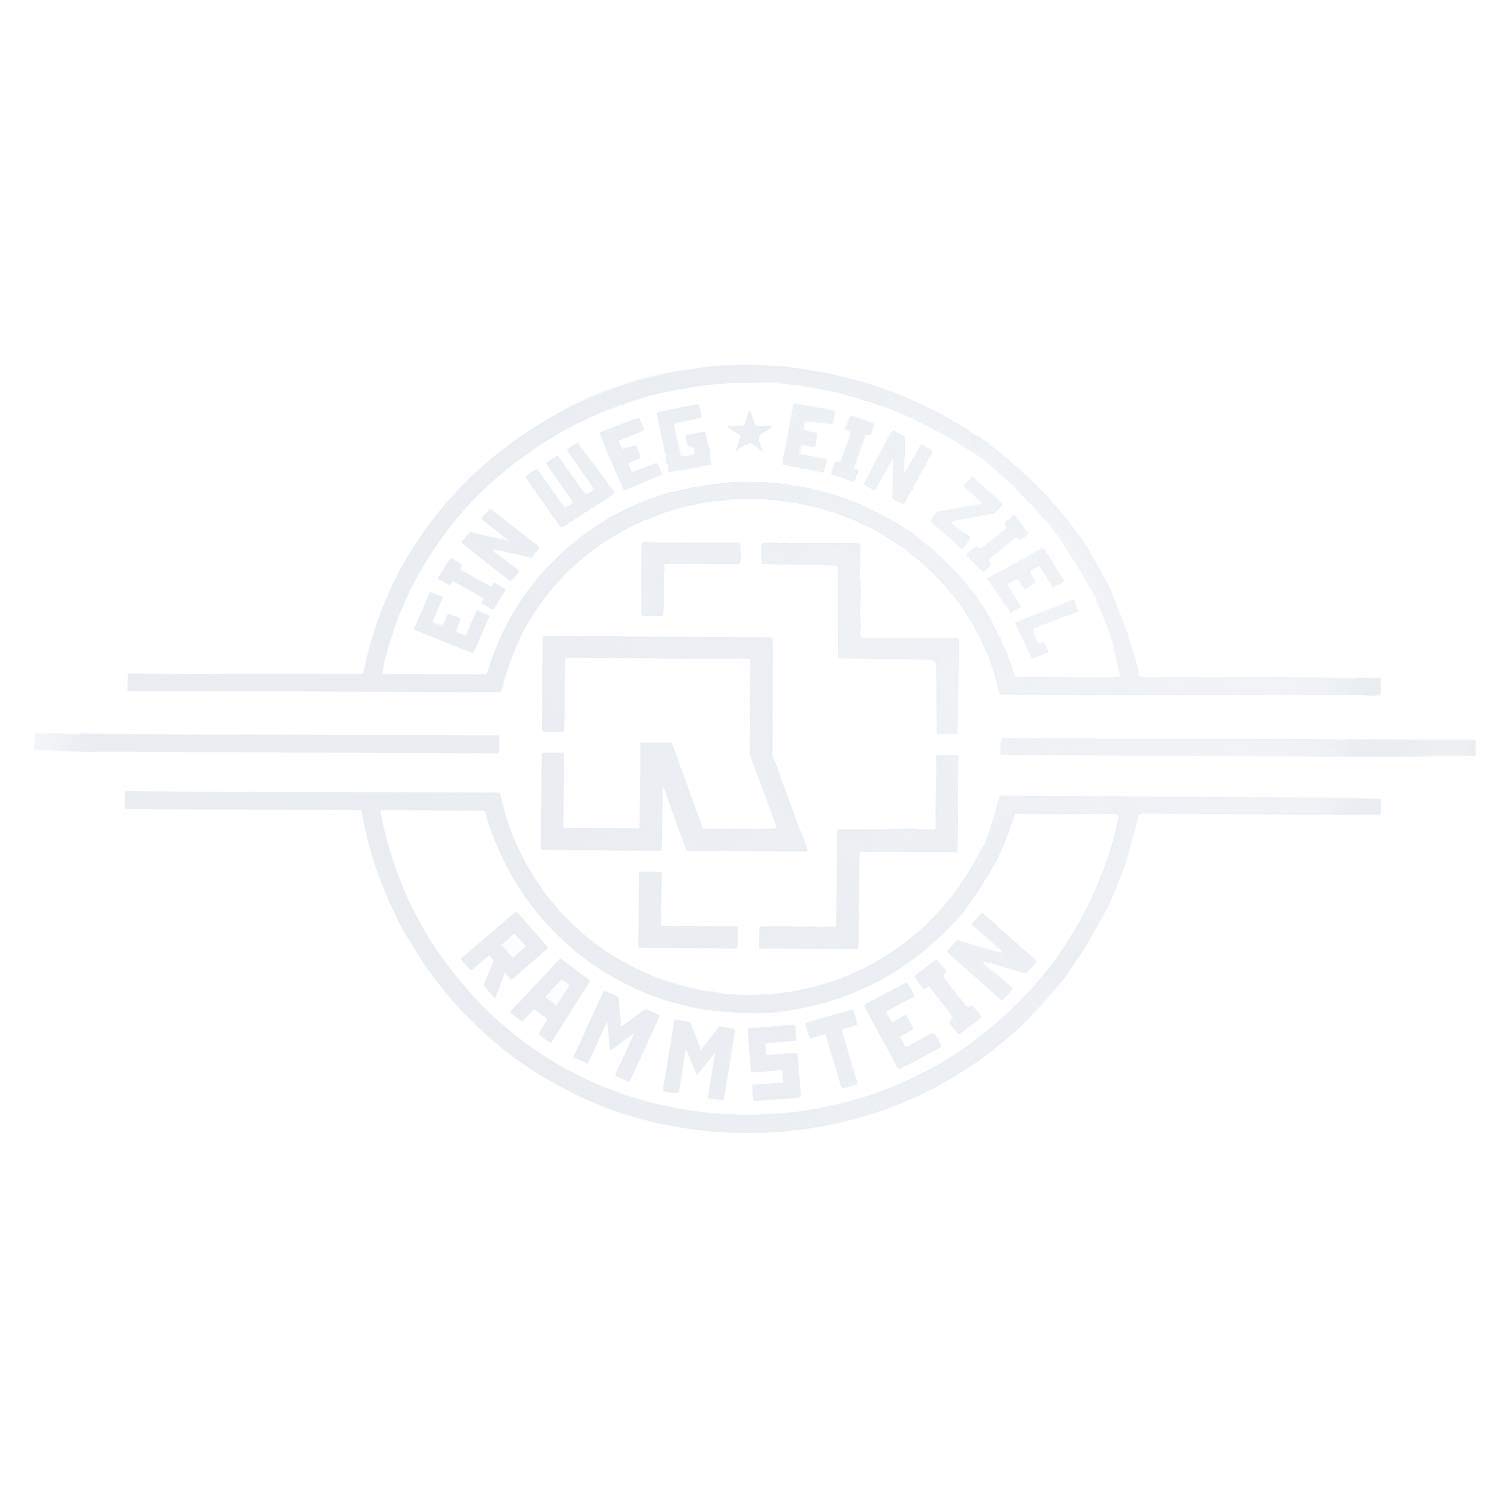 Rammstein Autoaufkleber Ein Weg, ein Ziel” weiß, Offizielles Band Merchandise (aussenklebend) 69 x 38cm Heckscheibe von Rammstein